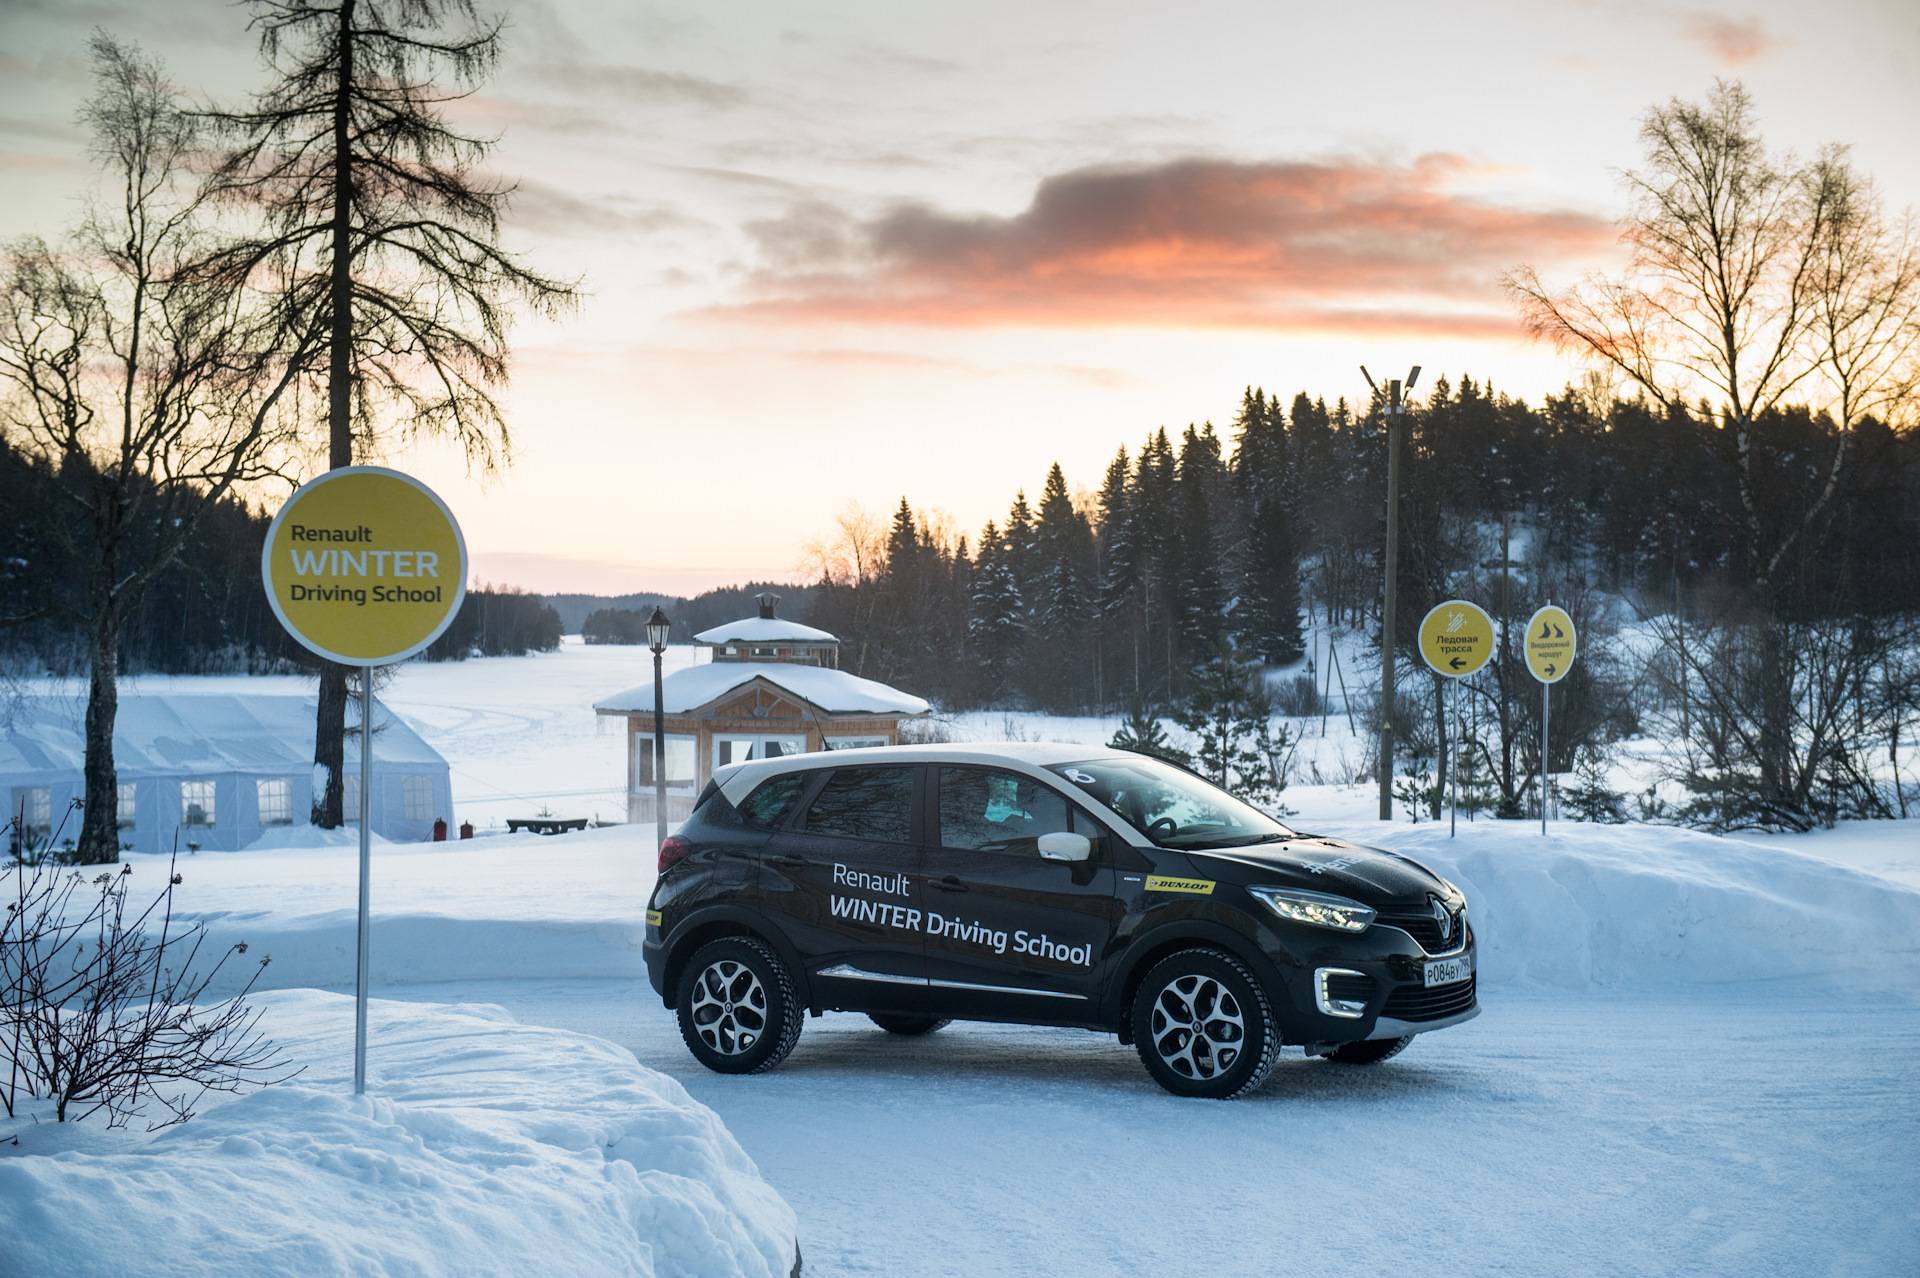 Школа зимнего вождения Renault в Карелии, тест драйв автомобилей Duster, Koleos и Kaptur